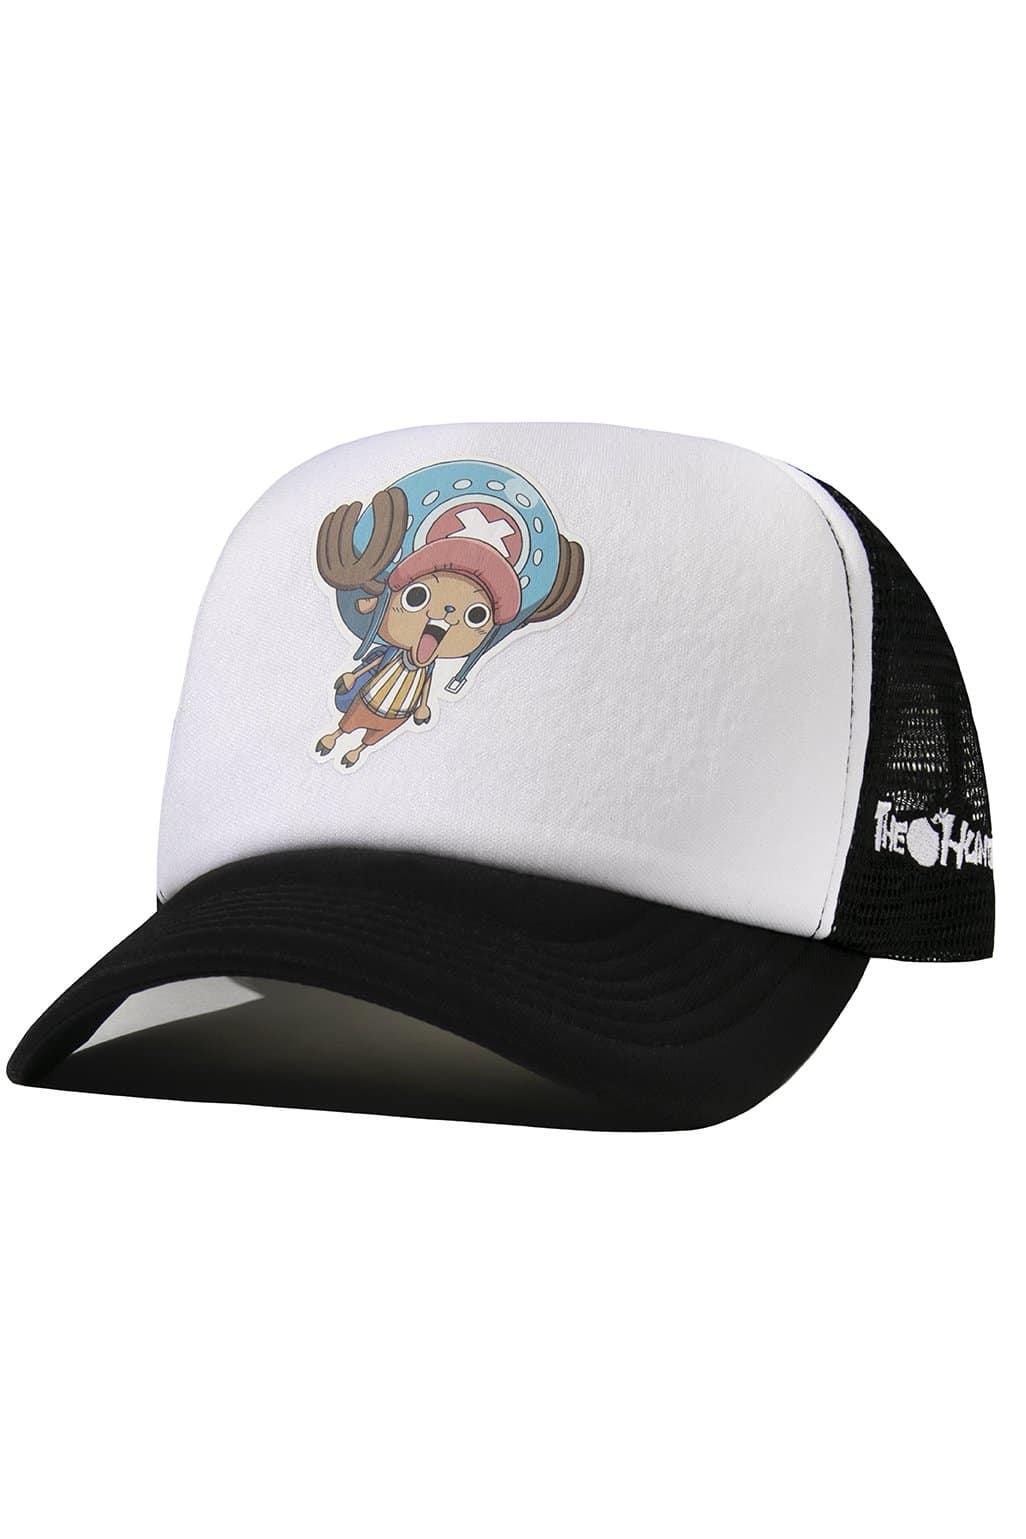 The Hundreds One Piece Chopper Trucker Hat